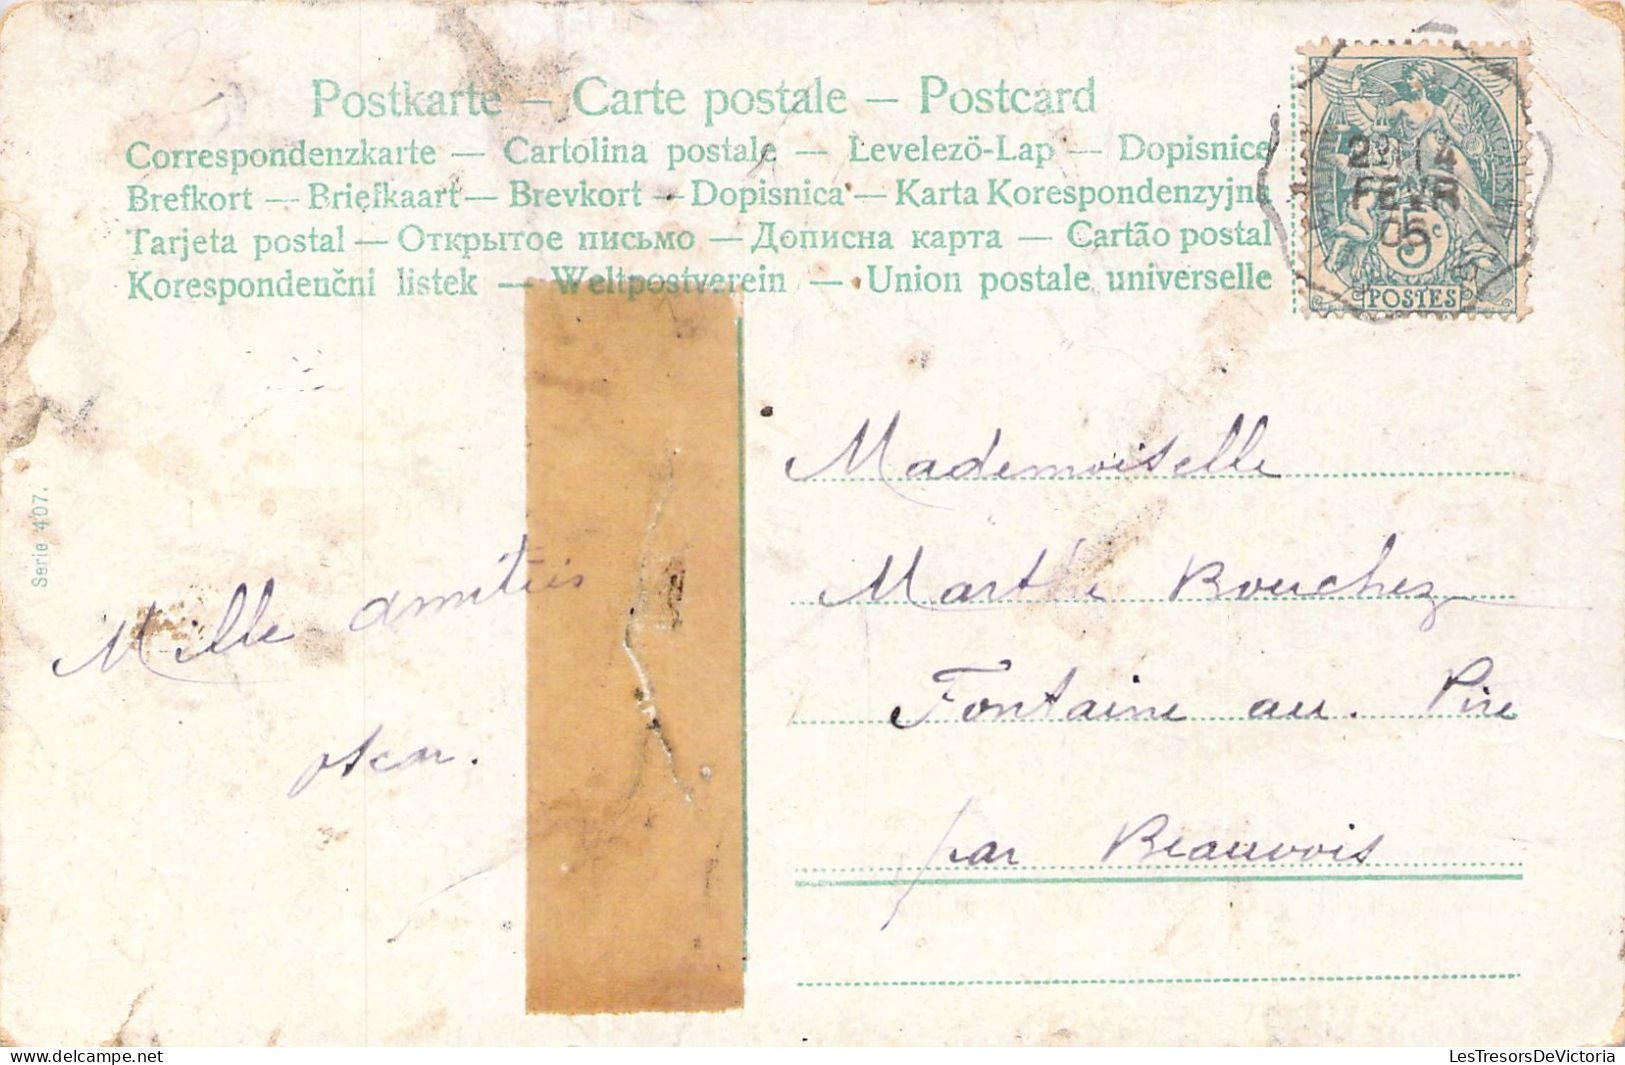 FANTAISIE - Bébés à La Piscine - Carte Postale Ancienne - Neonati